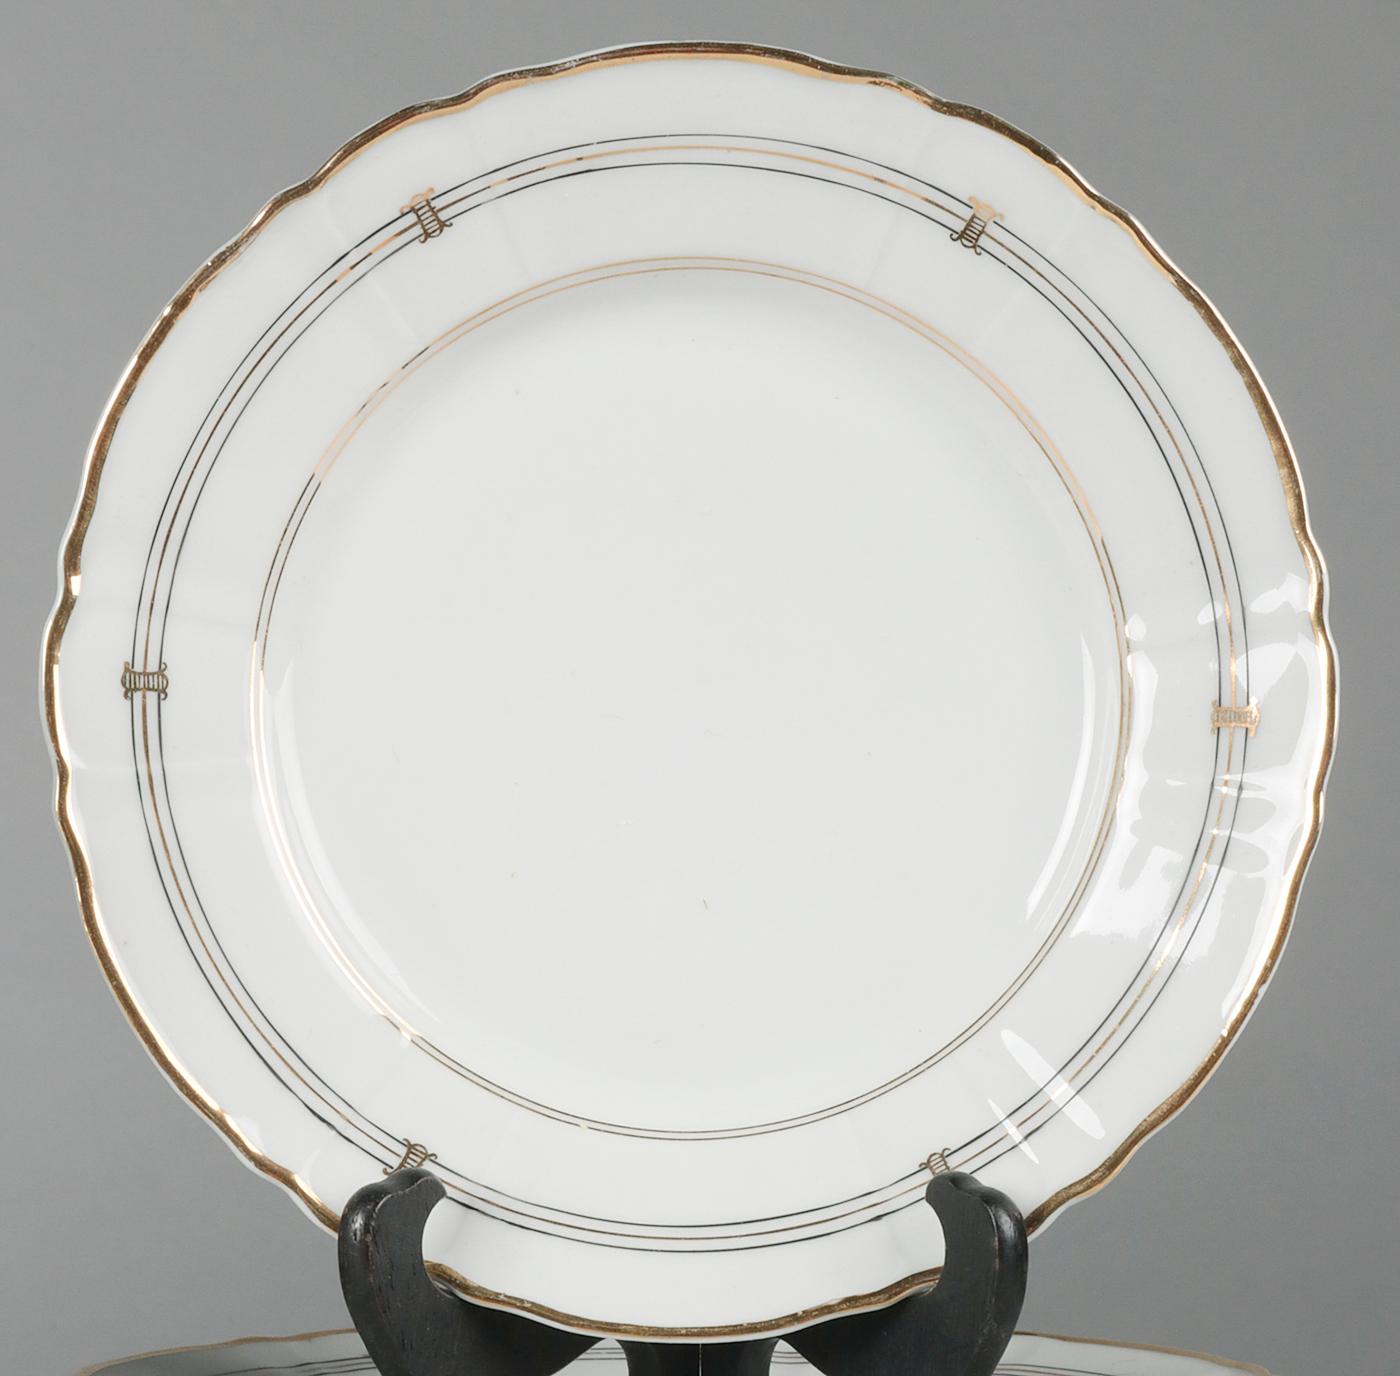 Louis XV 19th Century Extensive Porcelain Dining Service 'Vieux Paris'